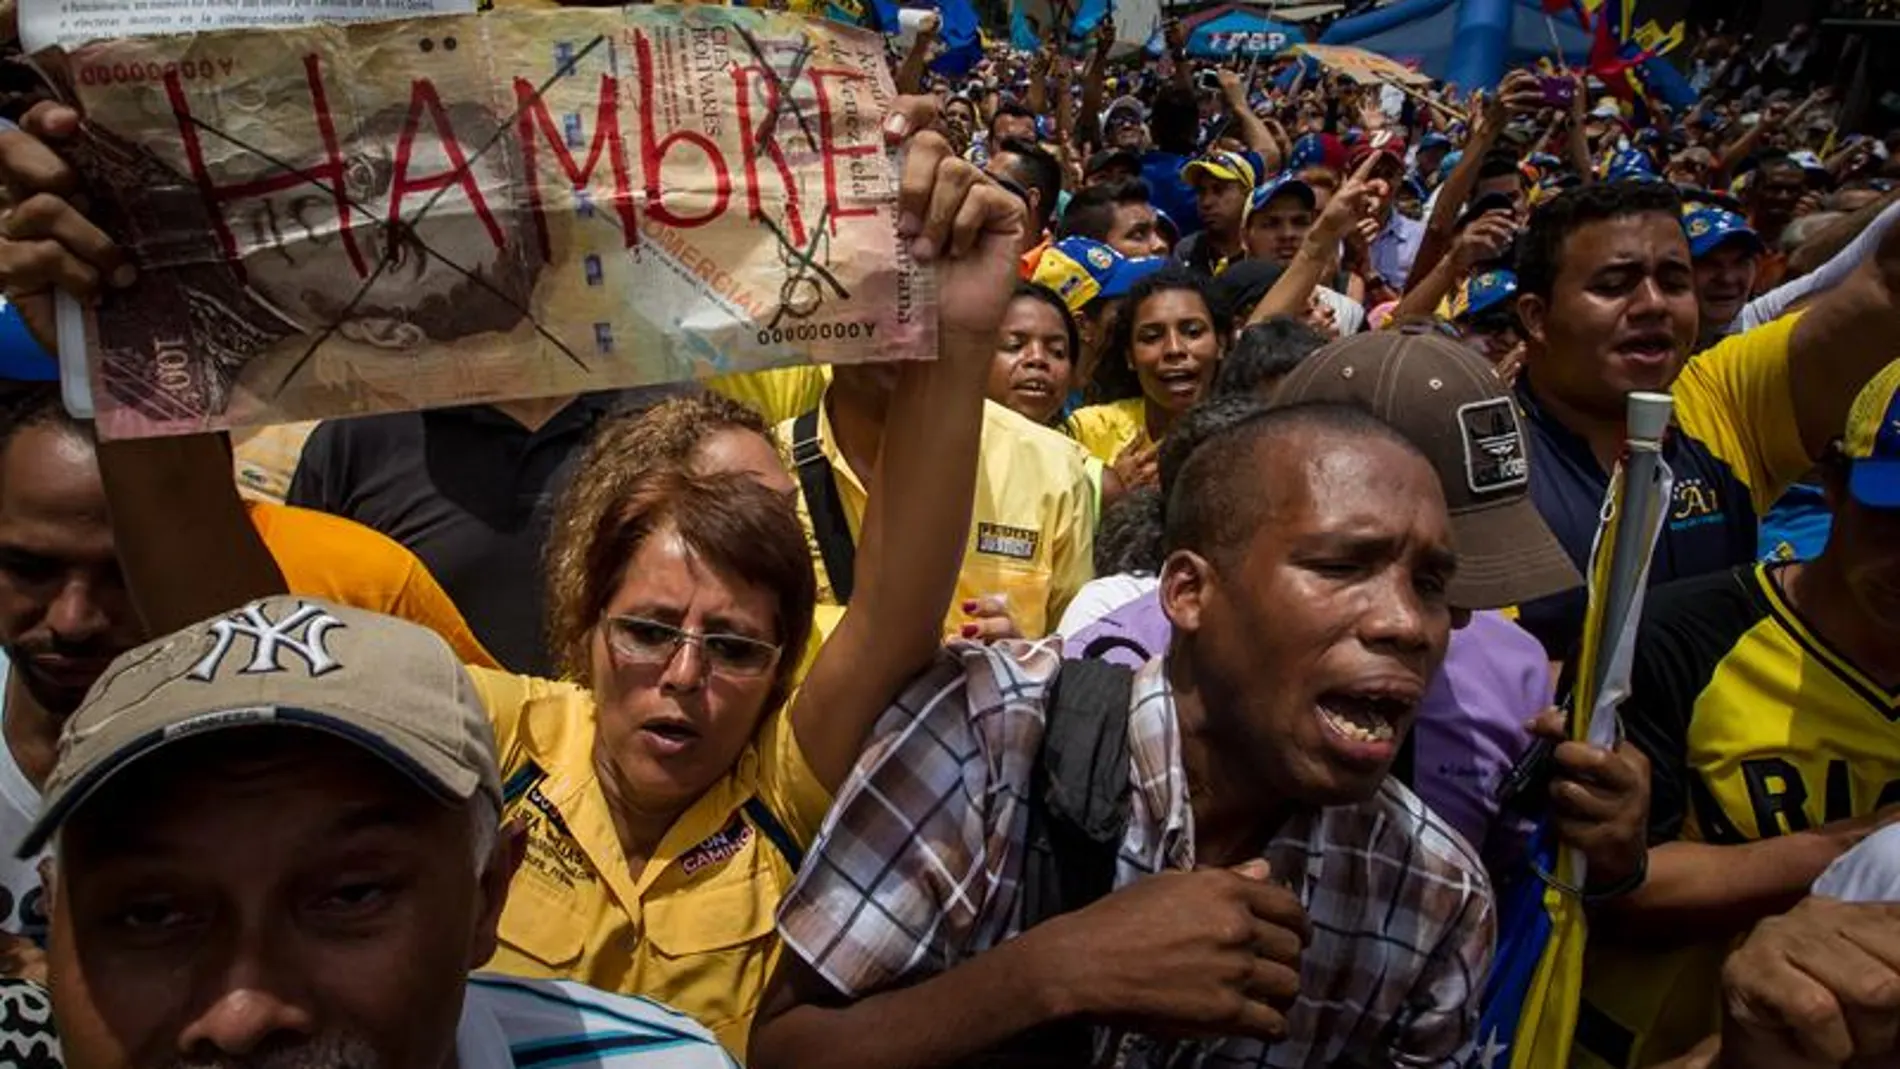 Una manifestante sostiene un letrero con la palabra "Hambre" en una protesta contra el Gobierno venezolano